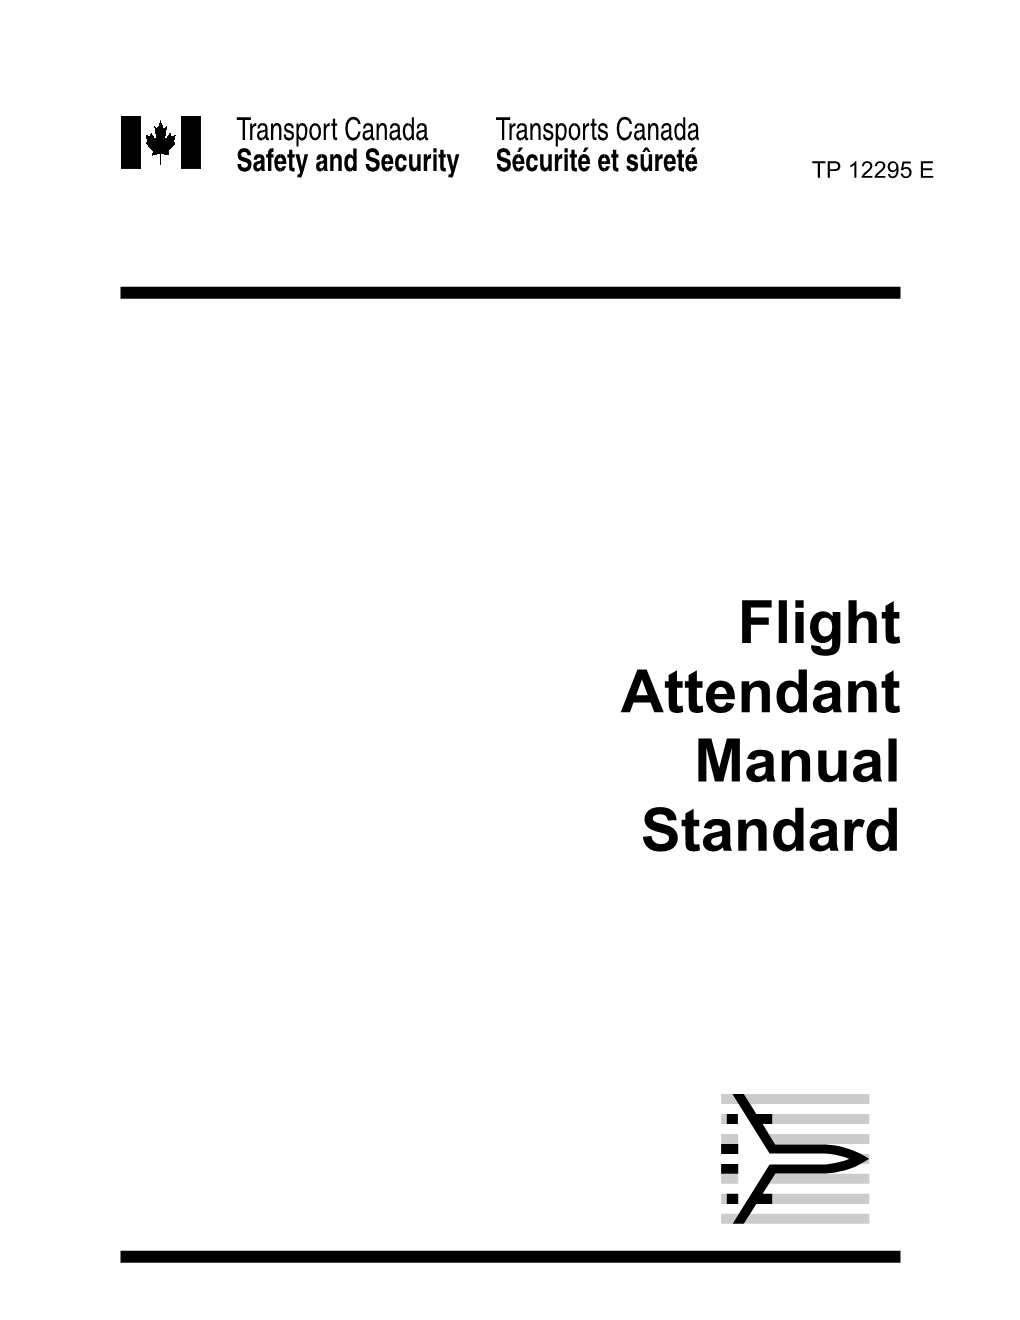 Flight Attendant Manual Standard